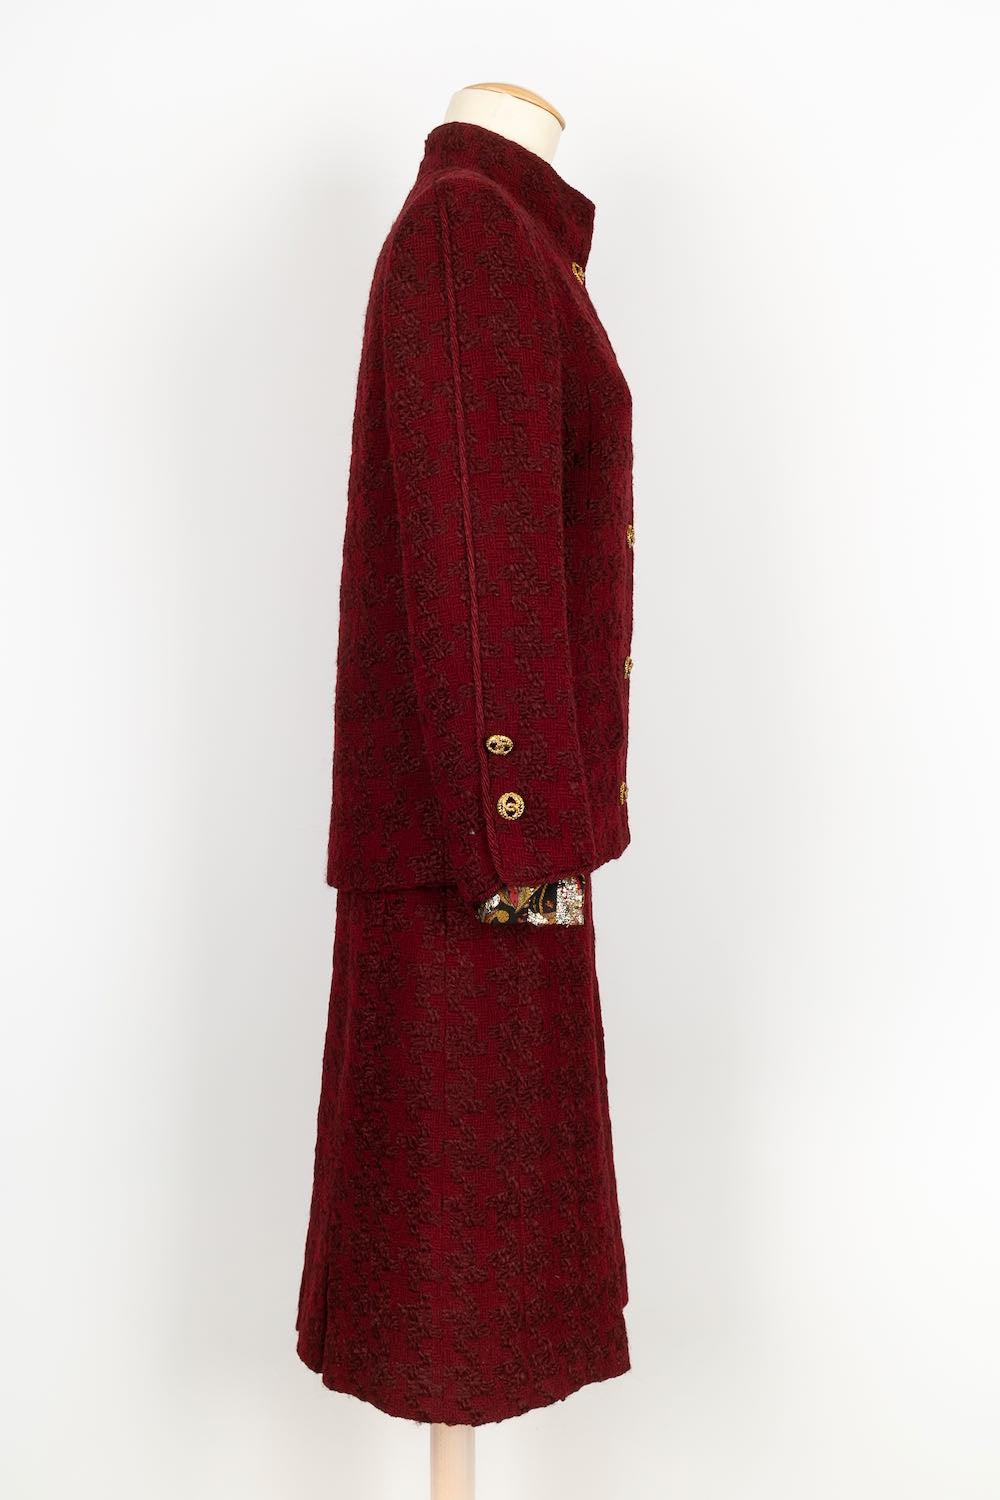 Chanel  Haute Couture Anzug aus Wolle und Seide. Kein Label der Zusammensetzung oder Größe angegeben, es entspricht einem 36 FR. 
Bolduc anwesend. 
Älterer Anzug mit leichten Gebrauchsspuren.

Zusätzliche Informationen: 

Abmessungen: 
Jacke: